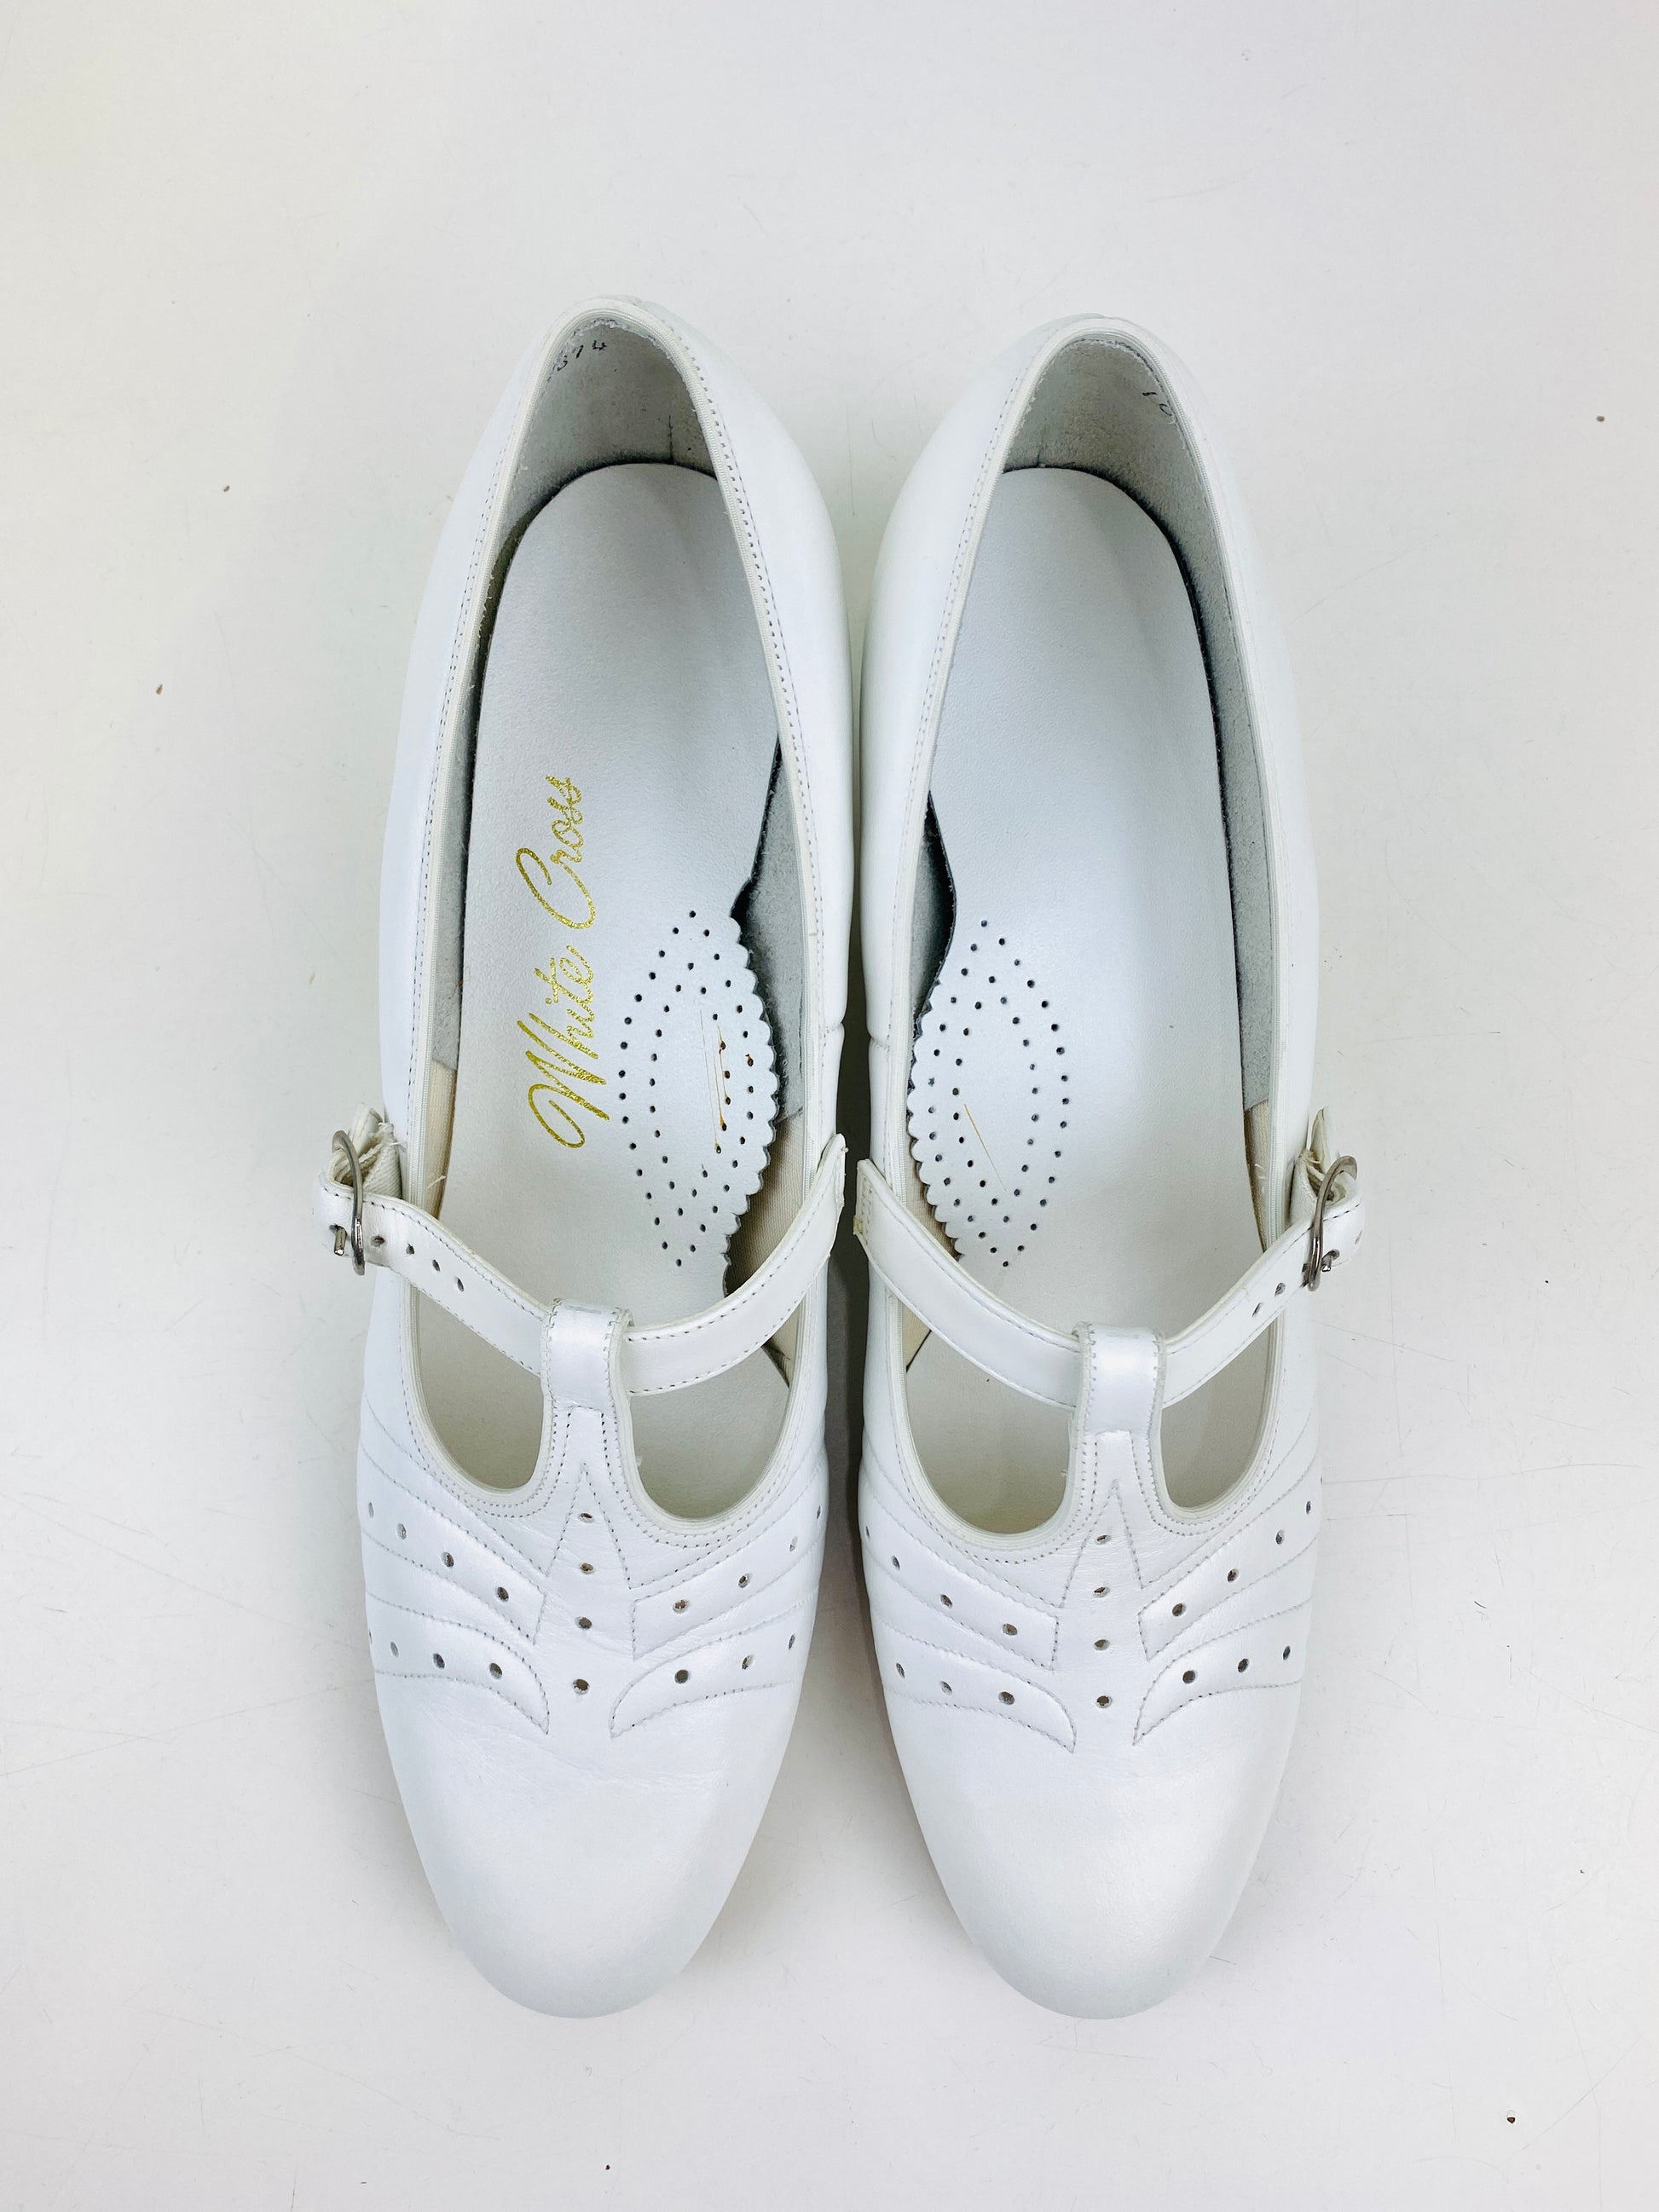 Vintage Deadstock Shoes, Women's 1980s White Leather Cuban Heel T-Strap Pumps, NOS, 8244